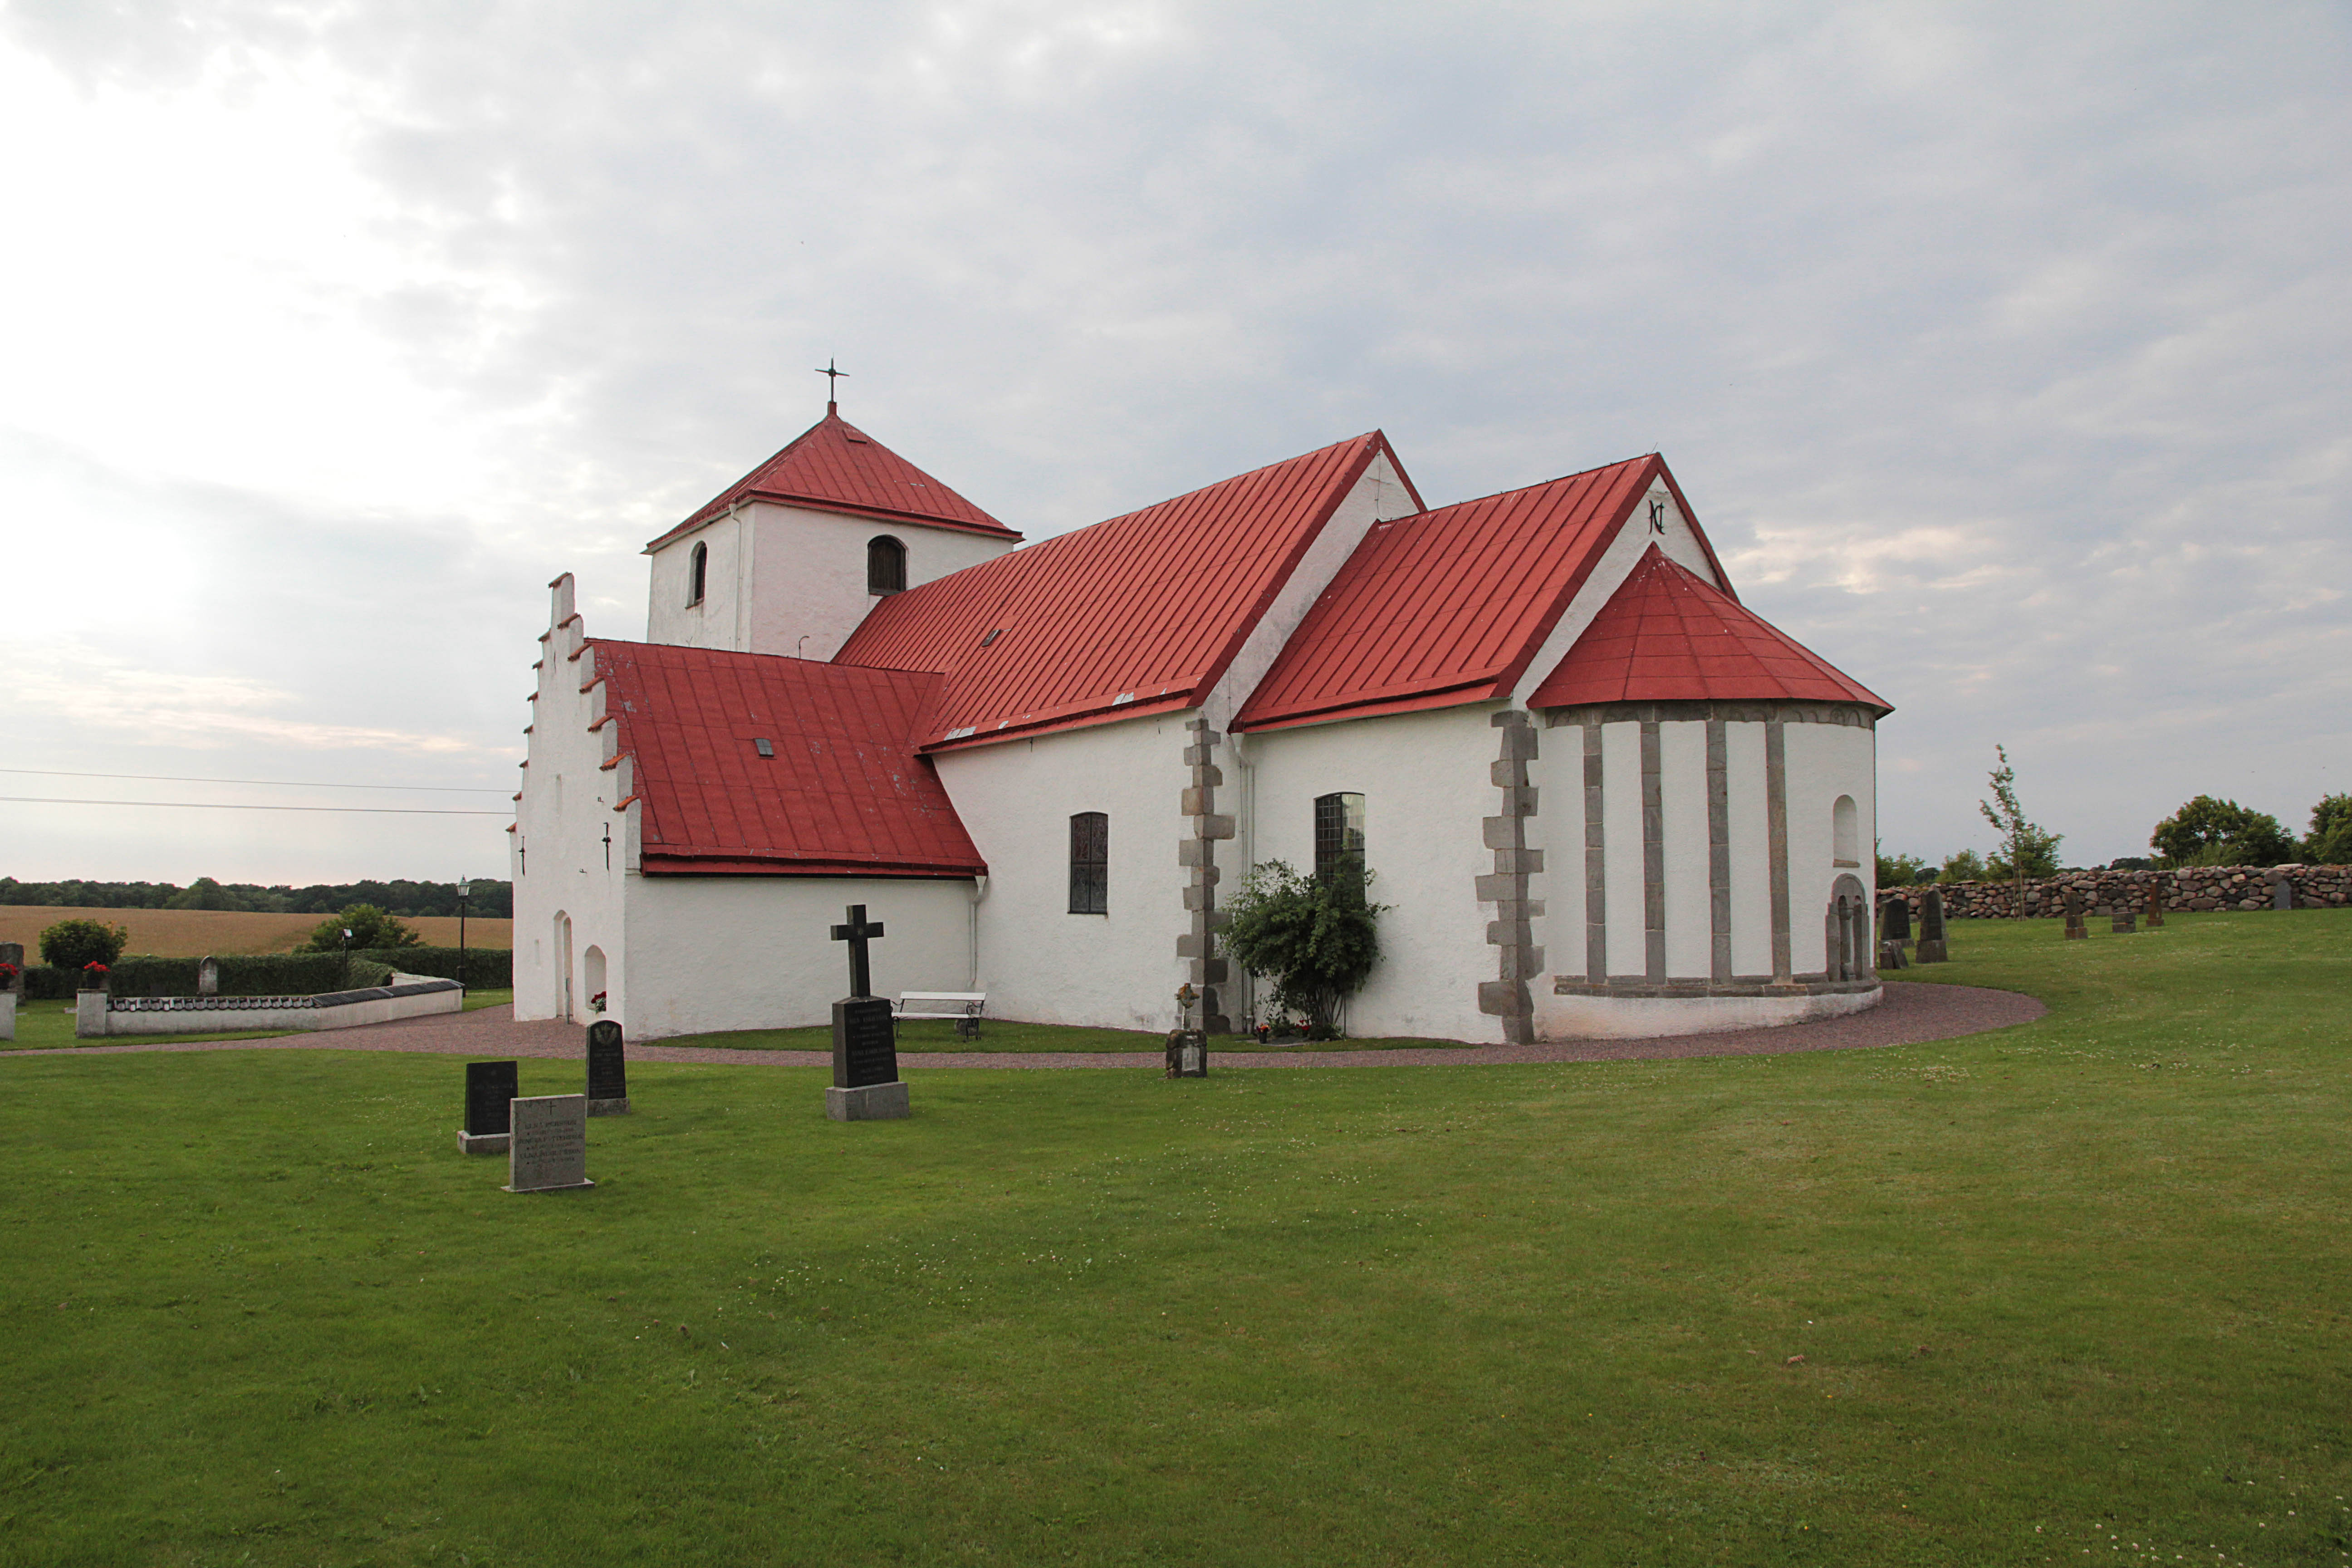 Fulltofta kyrka sedd från sydost